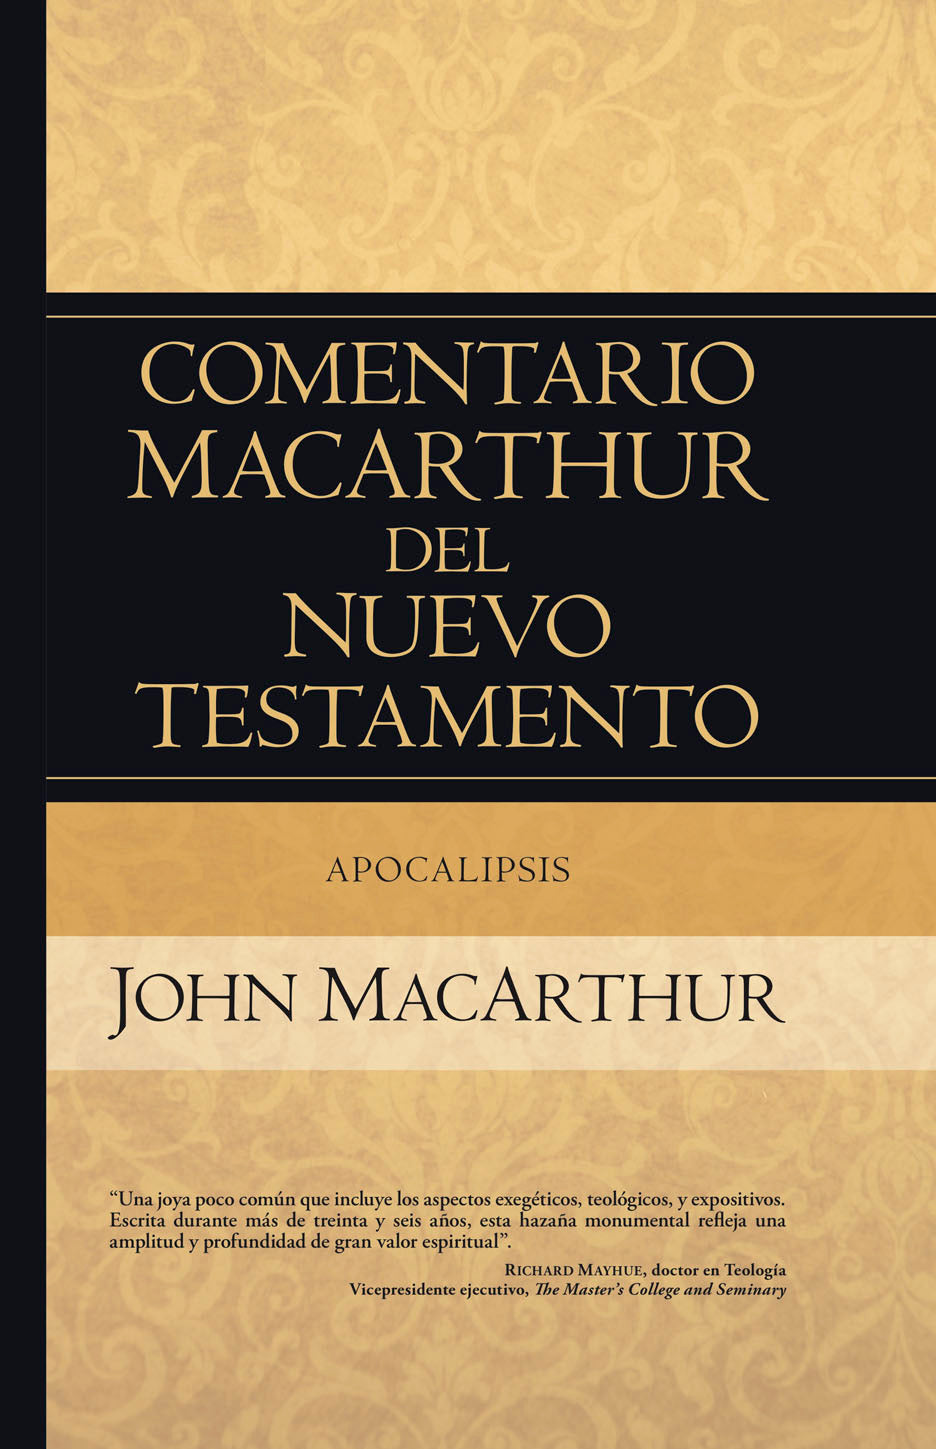 Comentario Macarthur del Nuevo Testamento - Apocalipsis